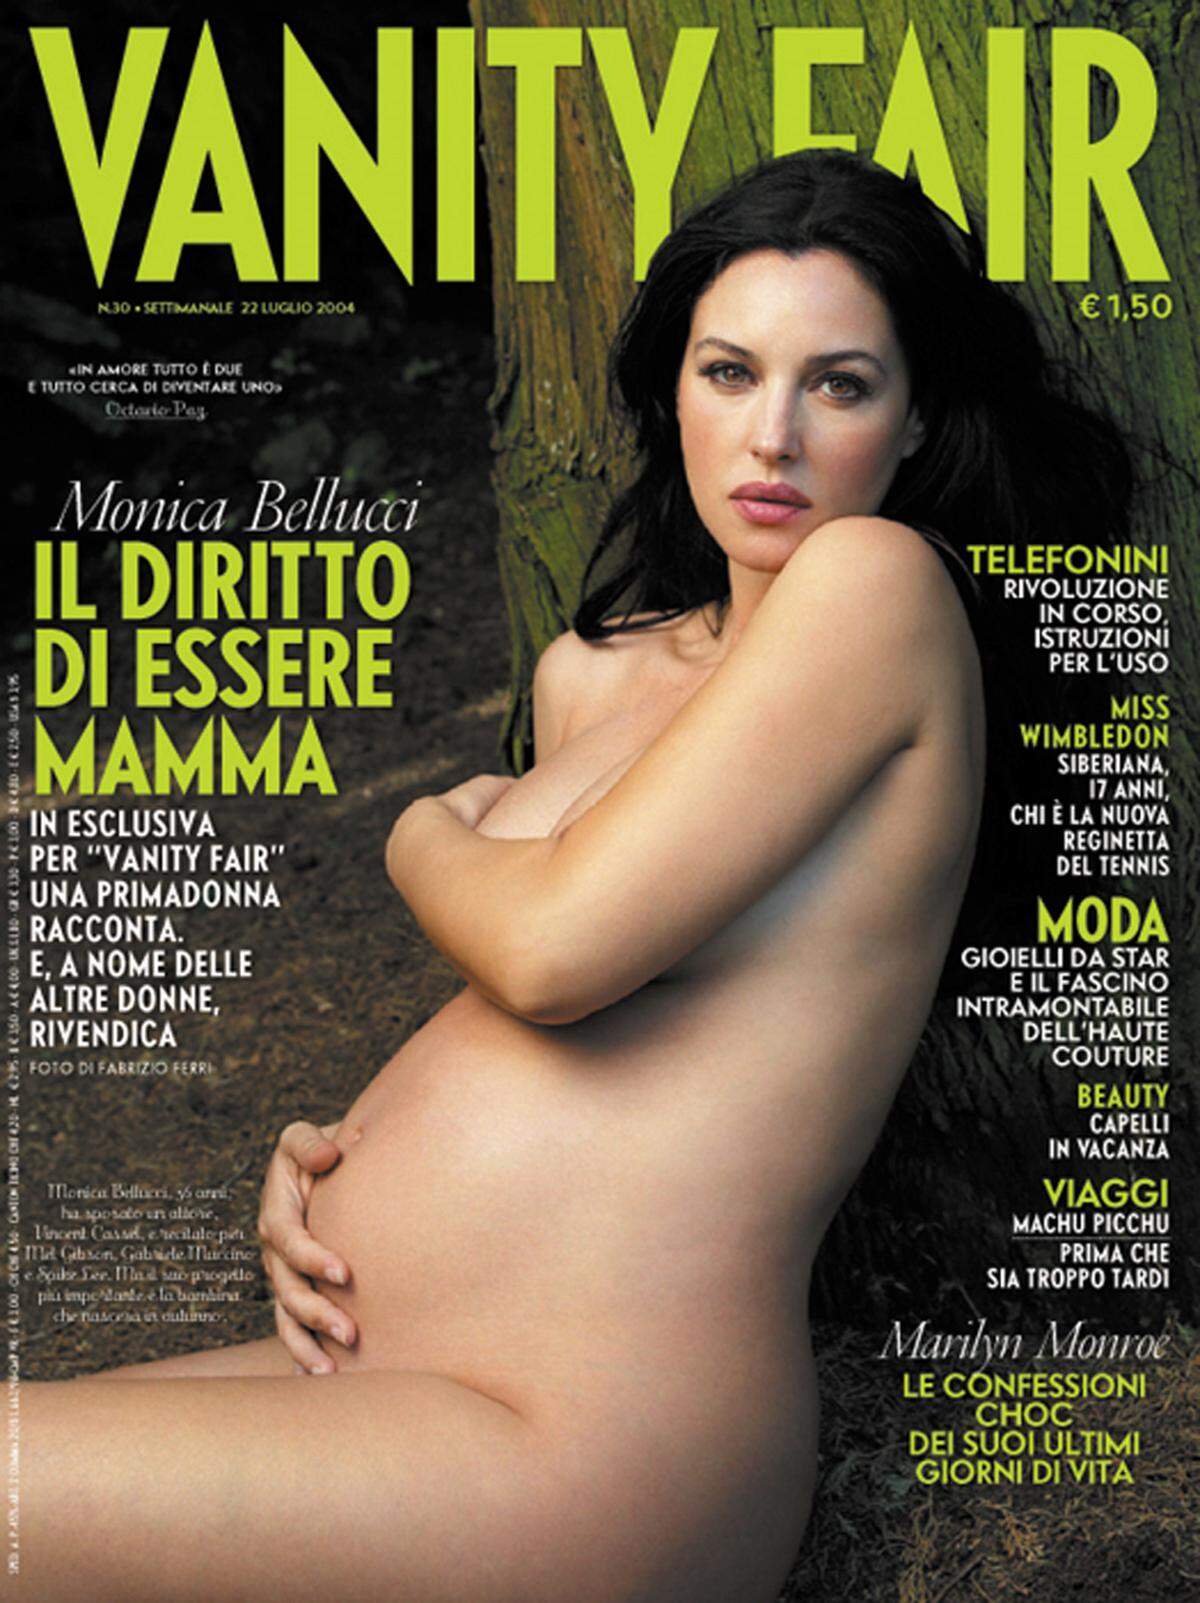 Die italienische Schauspielerin Monica Bellucci hat am 22. Mai ihre zweite Tochter zur Welt gebracht. Leonie heißt das Baby und ist nun fünf Jahre jünger als ihre große Schwester Deva. Auch Bellucci hat sich hochschwanger für "Vanity Fair" frei gemacht.